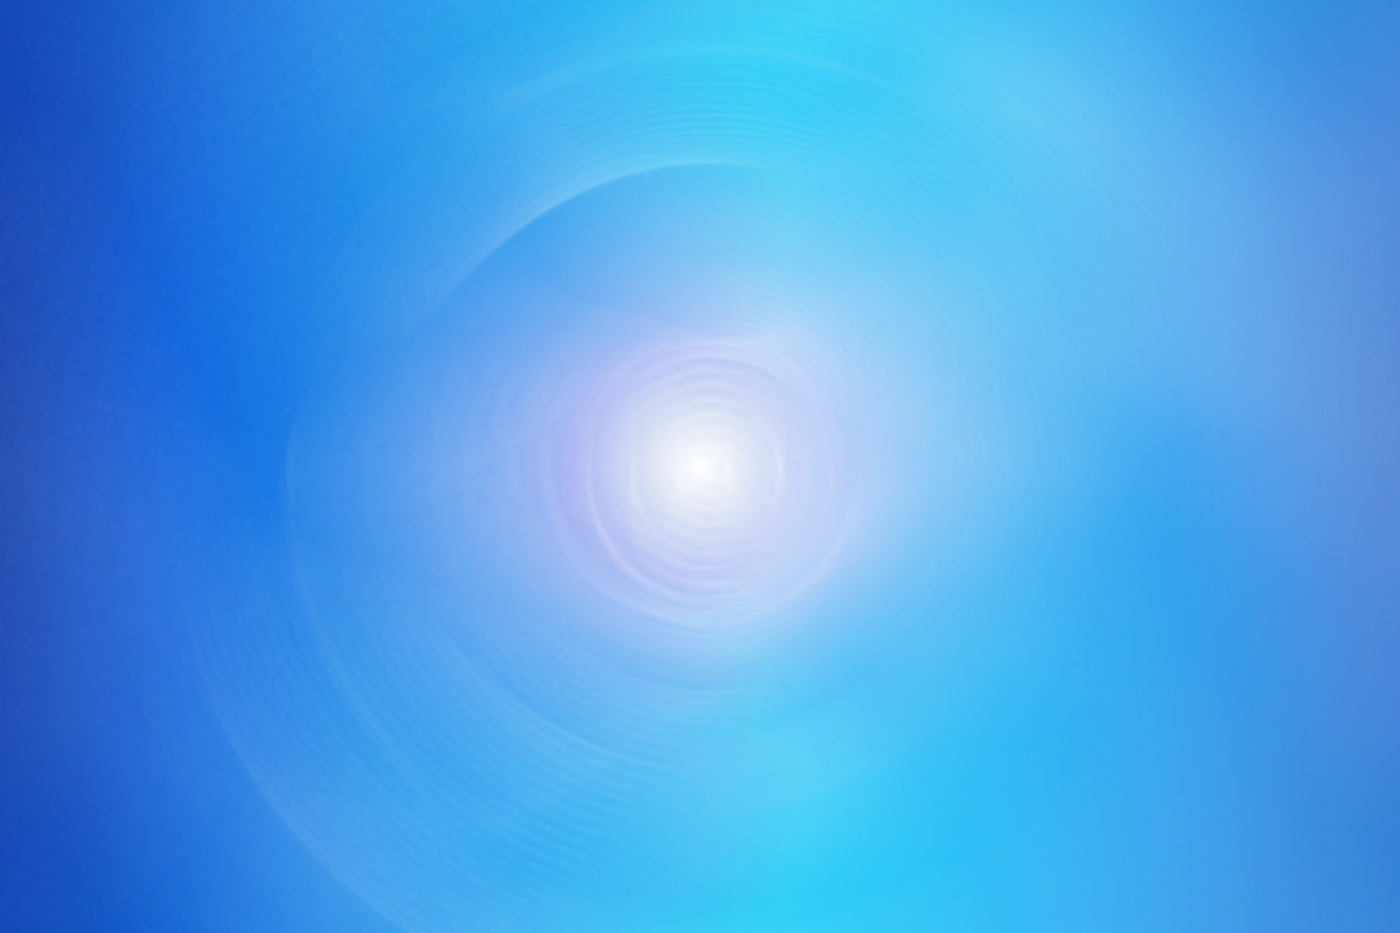 background blue vortex blurred spiral blurred vortex light light blur vortex motion blur swirl twirl Spiral